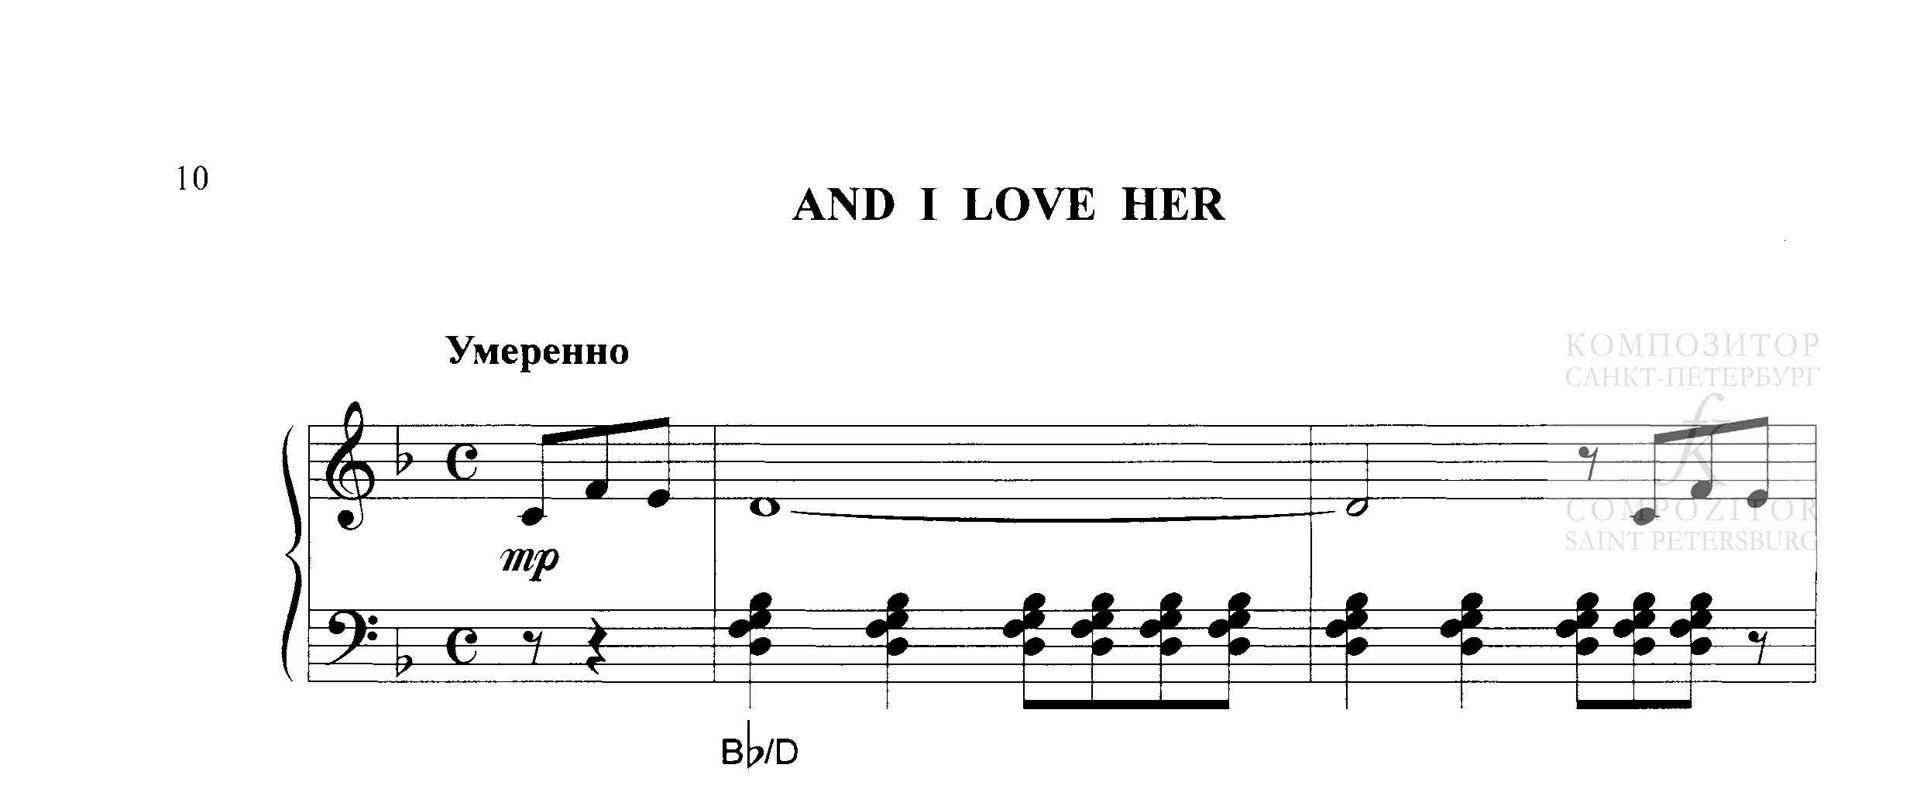 The Beatles. And I Love Her. Песня Битлз в легком переложении для фортепиано (гитары)